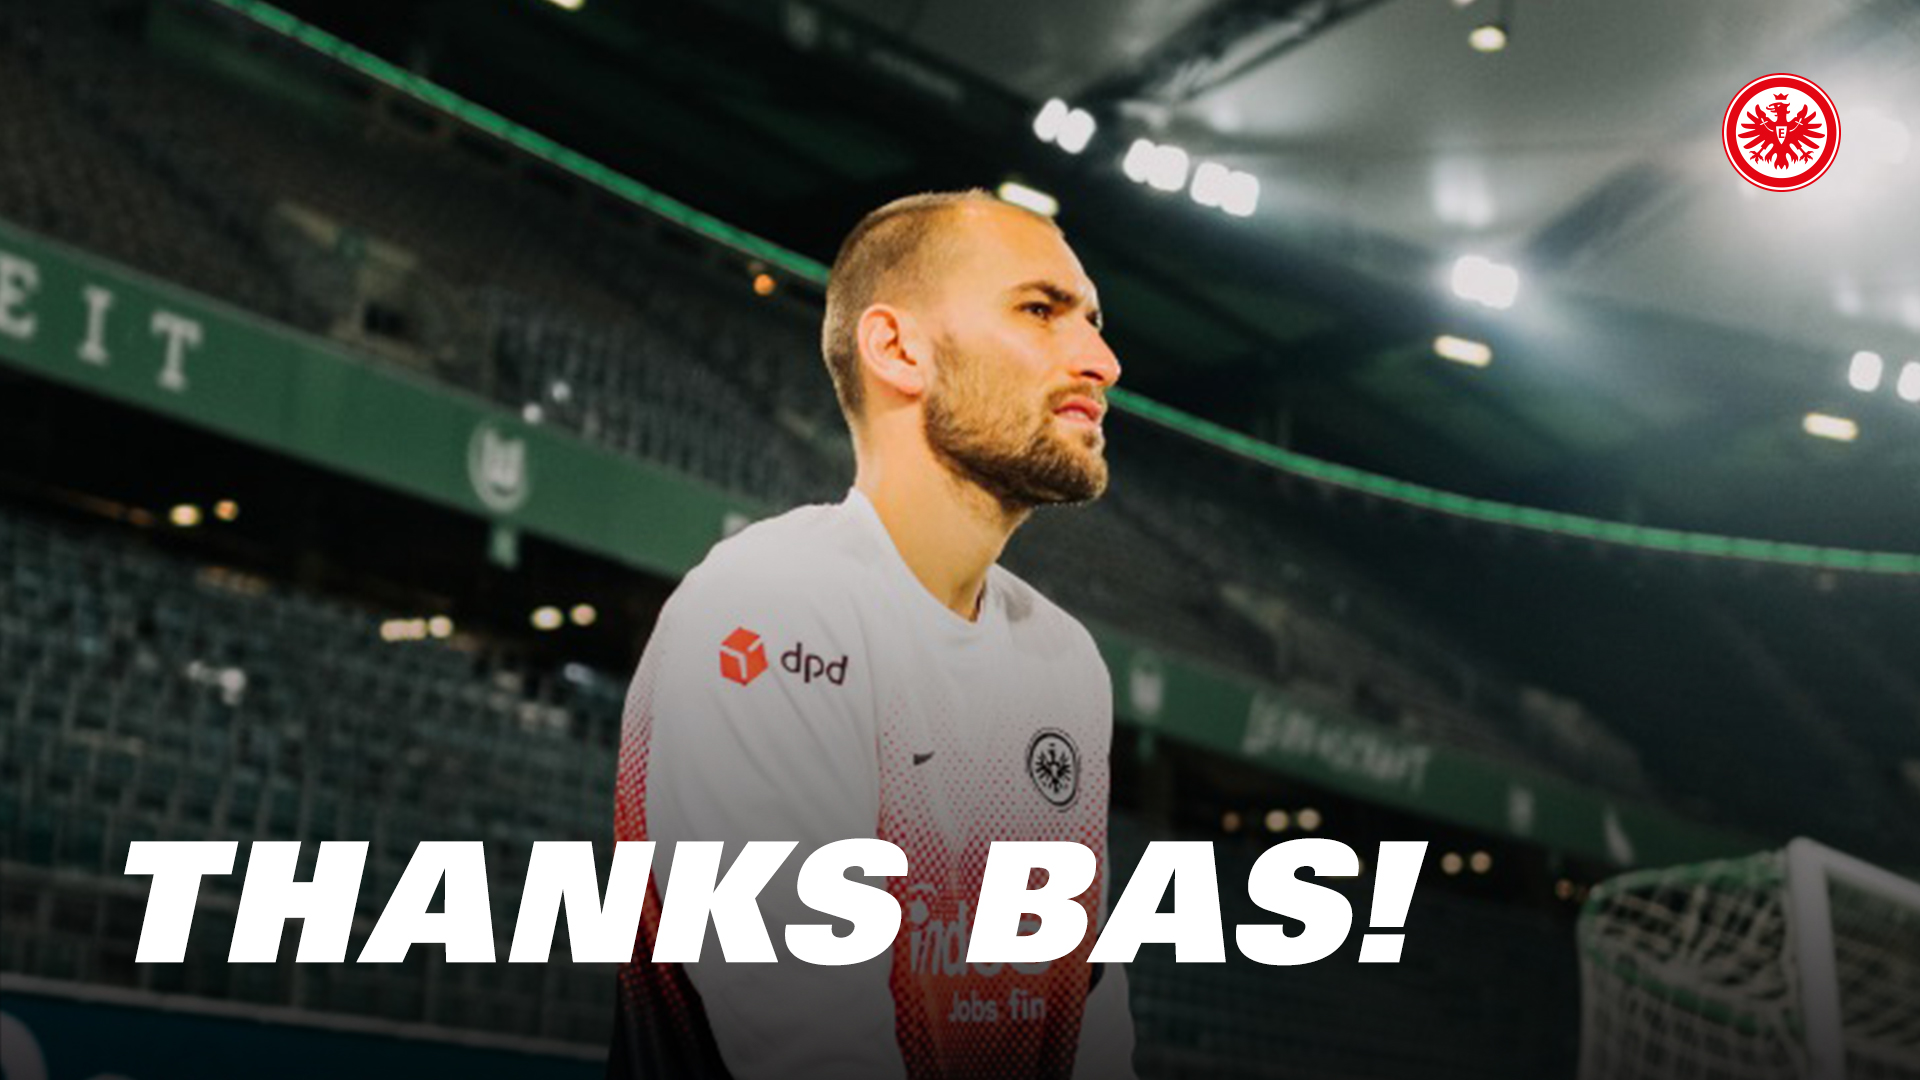 Eintracht Frankfurt この度 バス ドスト が Clubbrugge へ移籍することとなりました これまでのクラブへの貢献に感謝し 新天地での活躍を心より願っております Vielen Dank Dost Sge アイントラハト フランクフルト T Co